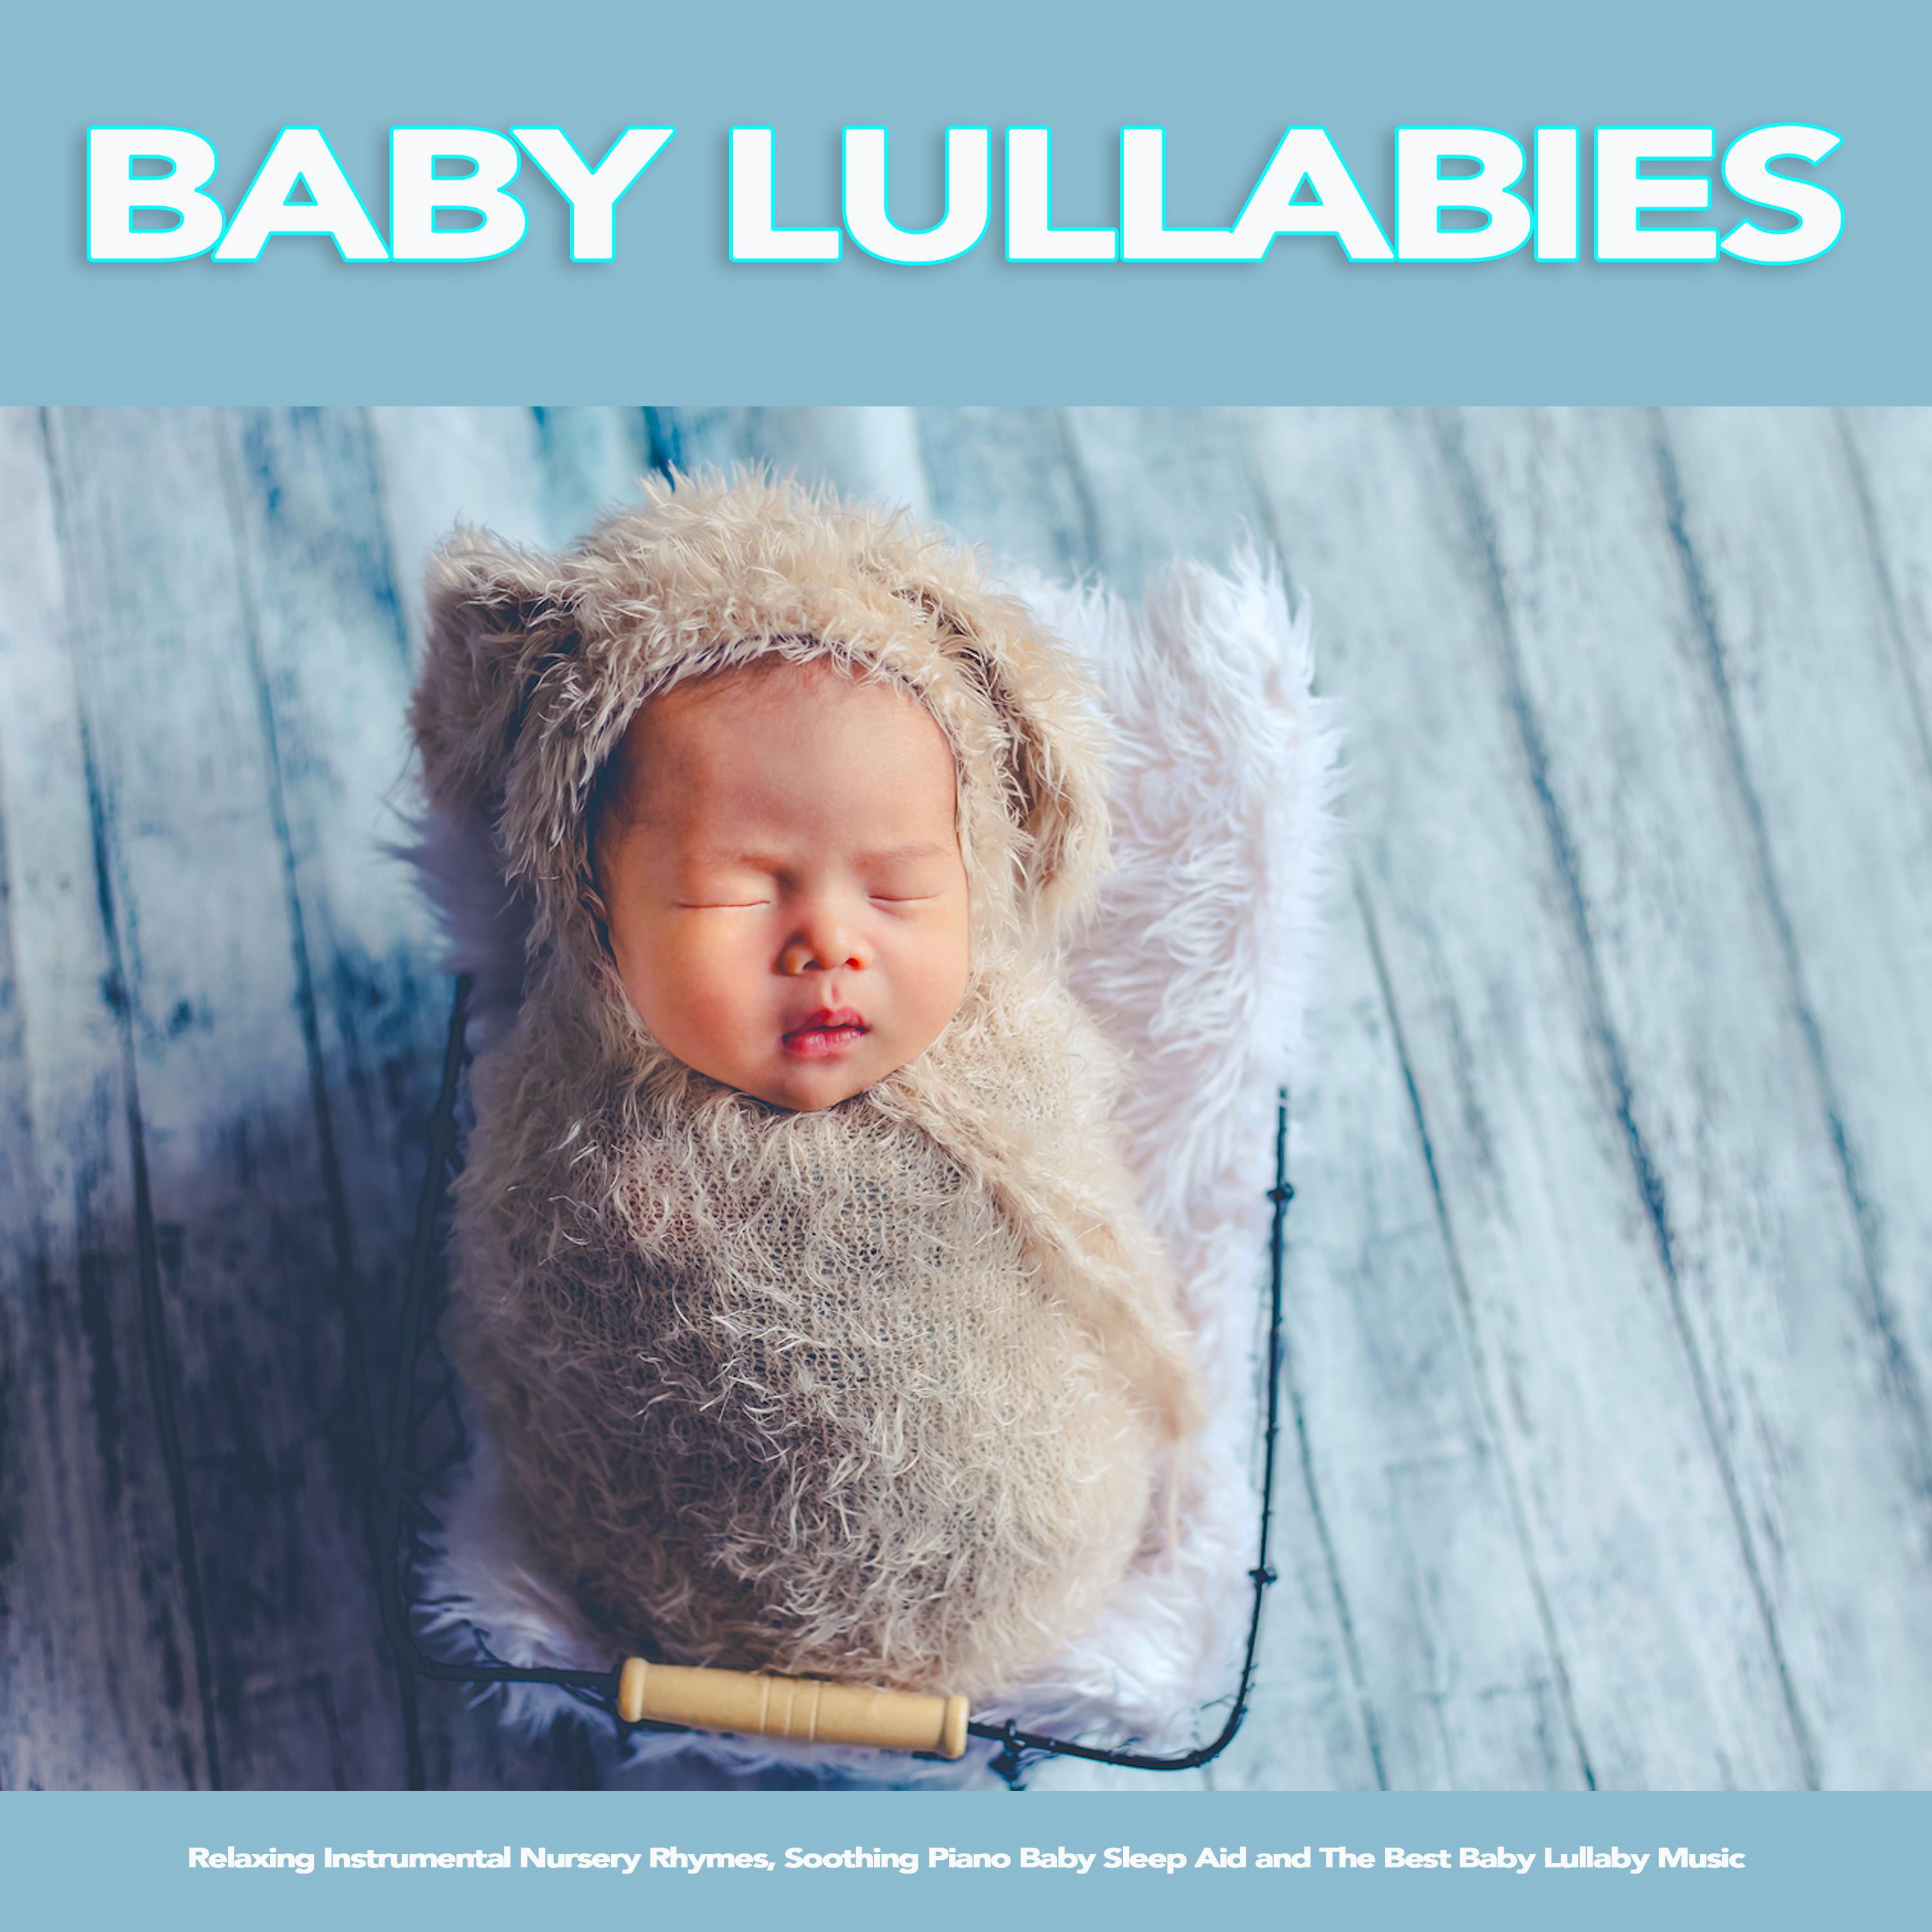 London Bridge Is Falling Down - Baby Lullabies and Nursery Rhymes For Baby Sleep